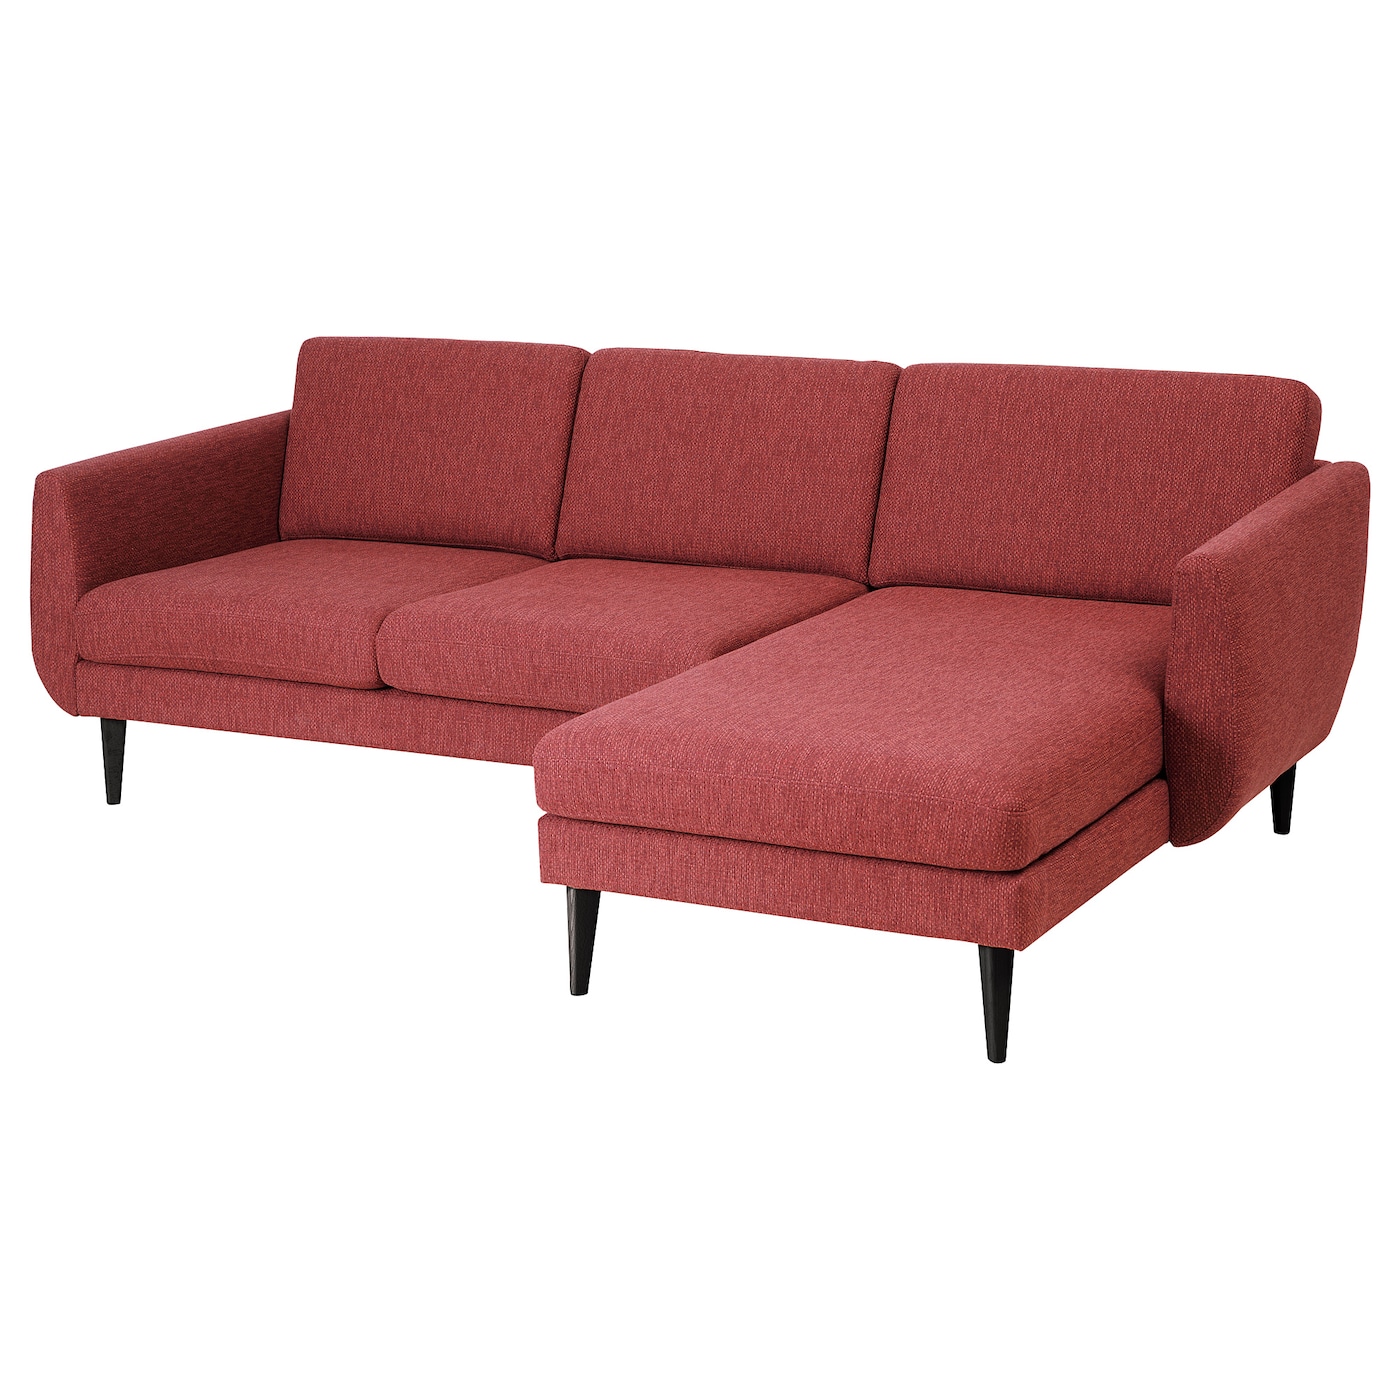 СМЕДСТОРП 3-местный диван + диван, Лейде красный/коричневый/черный SMEDSTORP IKEA диван офисный шарм дизайн бит с подушками коричневый